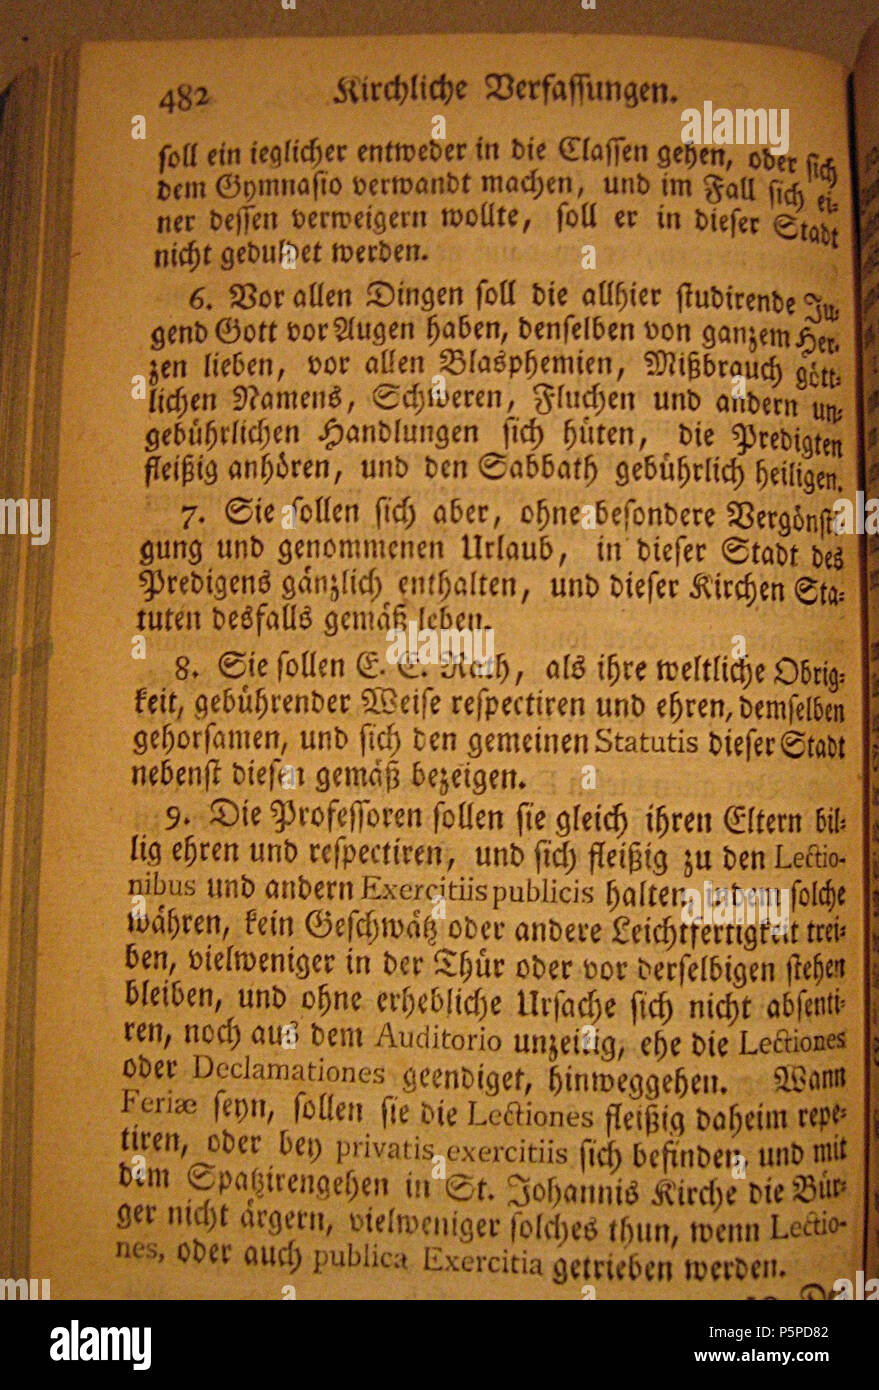 N/A. This is a scan of the historical document with the title: Ordnung des Gymnasii aus/ From Sammlung Hamburgischer Gesetze und Verfassungen, Der Achte Theil . 1770. Klefeker, Johann (Ed.) 425 De Ordnung des Gymnasii 482 Stock Photo